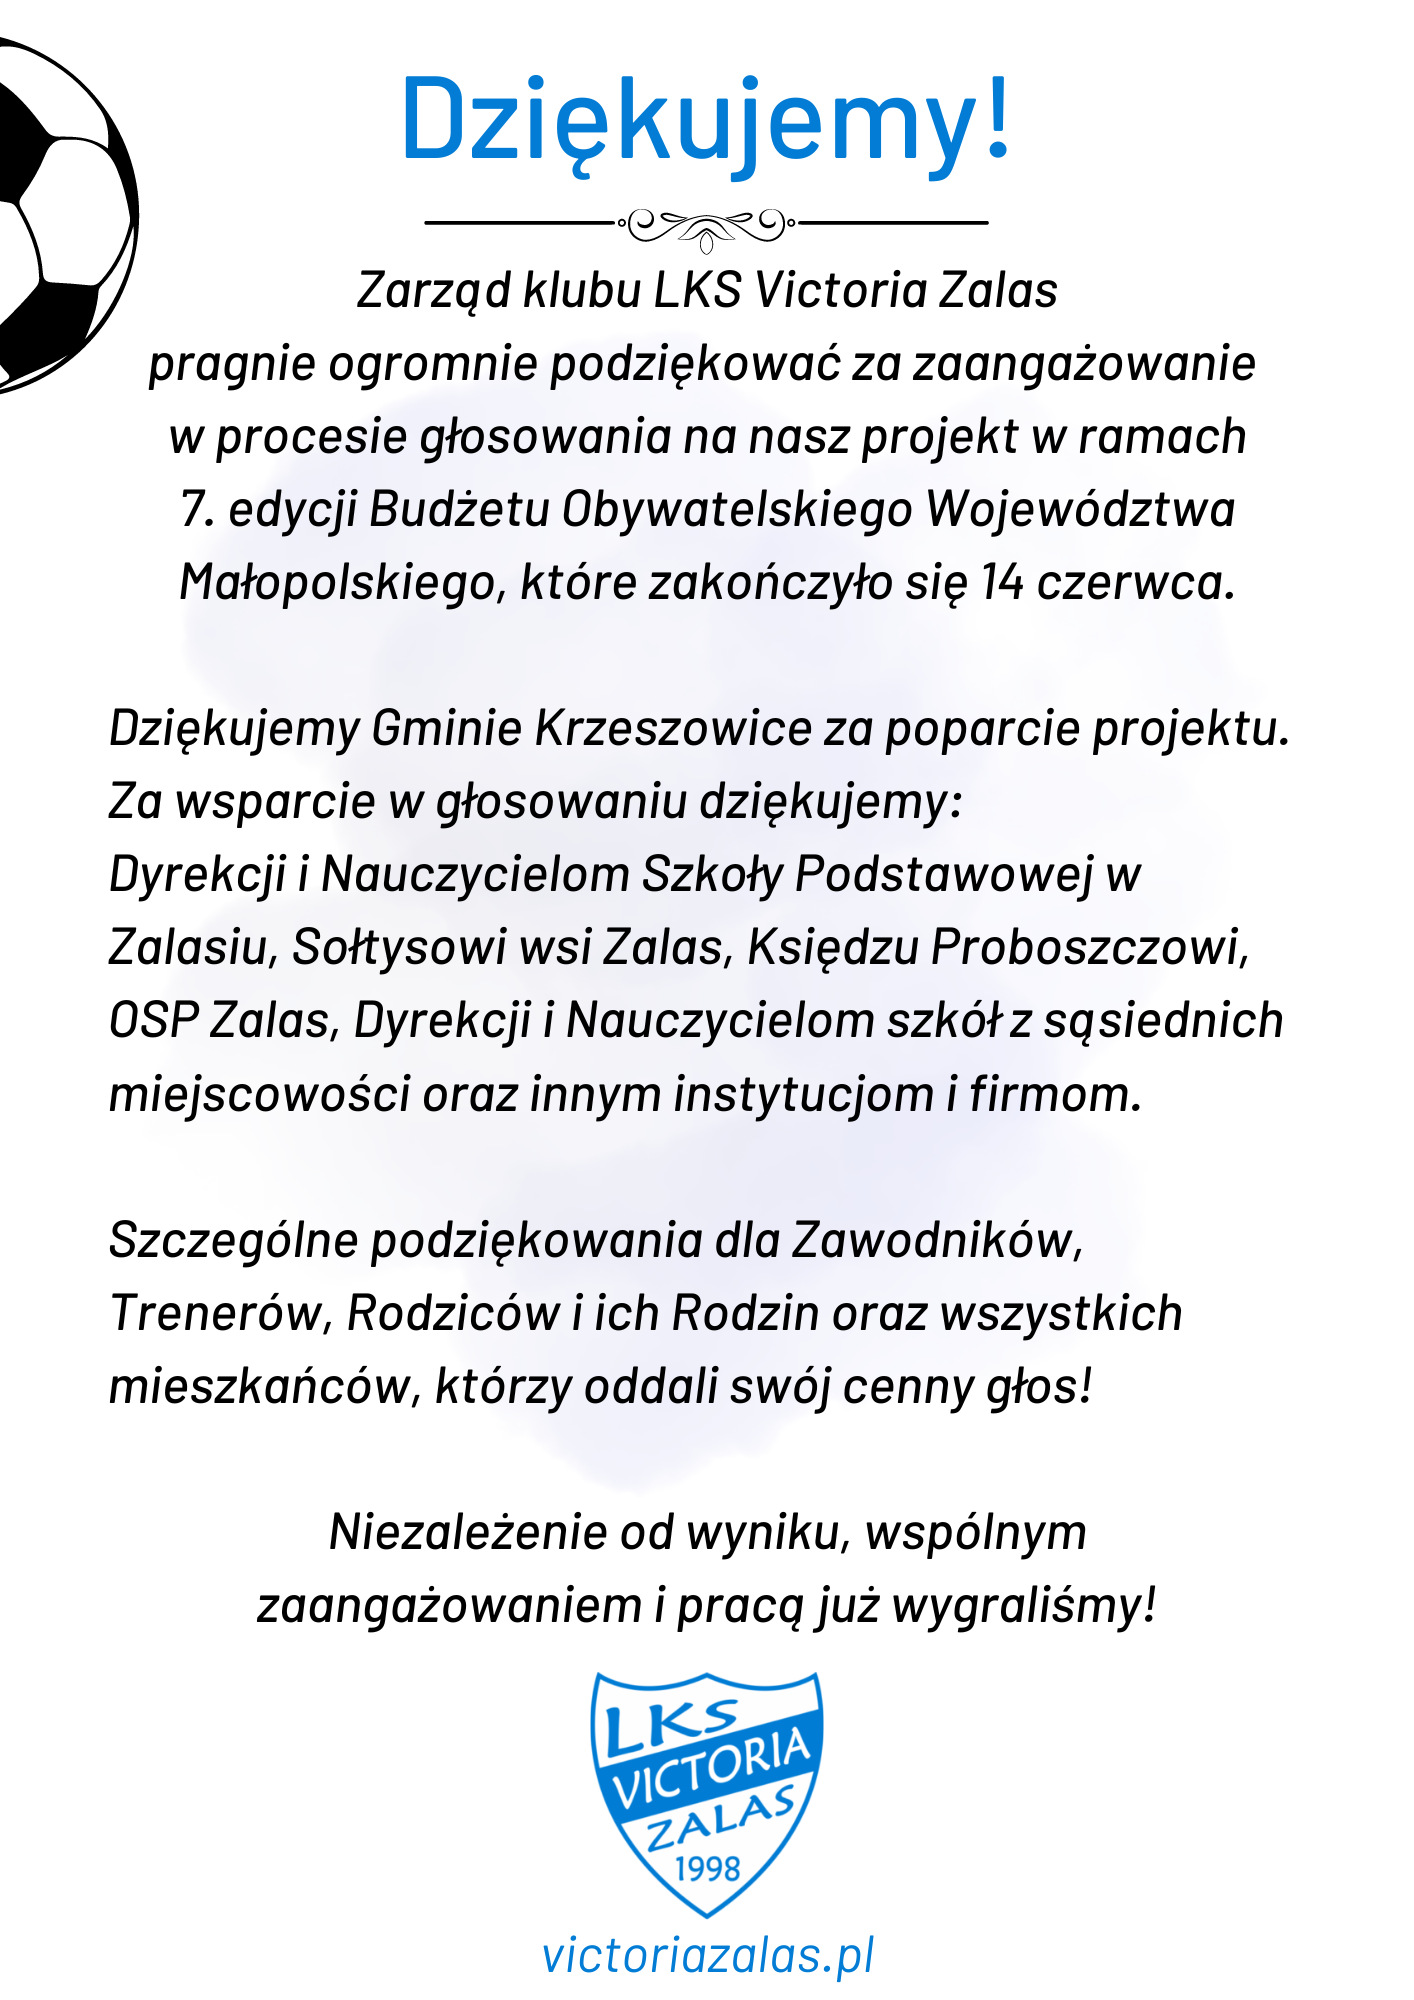 Dziękujemy za wsparcie w trakcie 7. edycji Budżetu Obywatelskiego Województwa Małopolskiego!